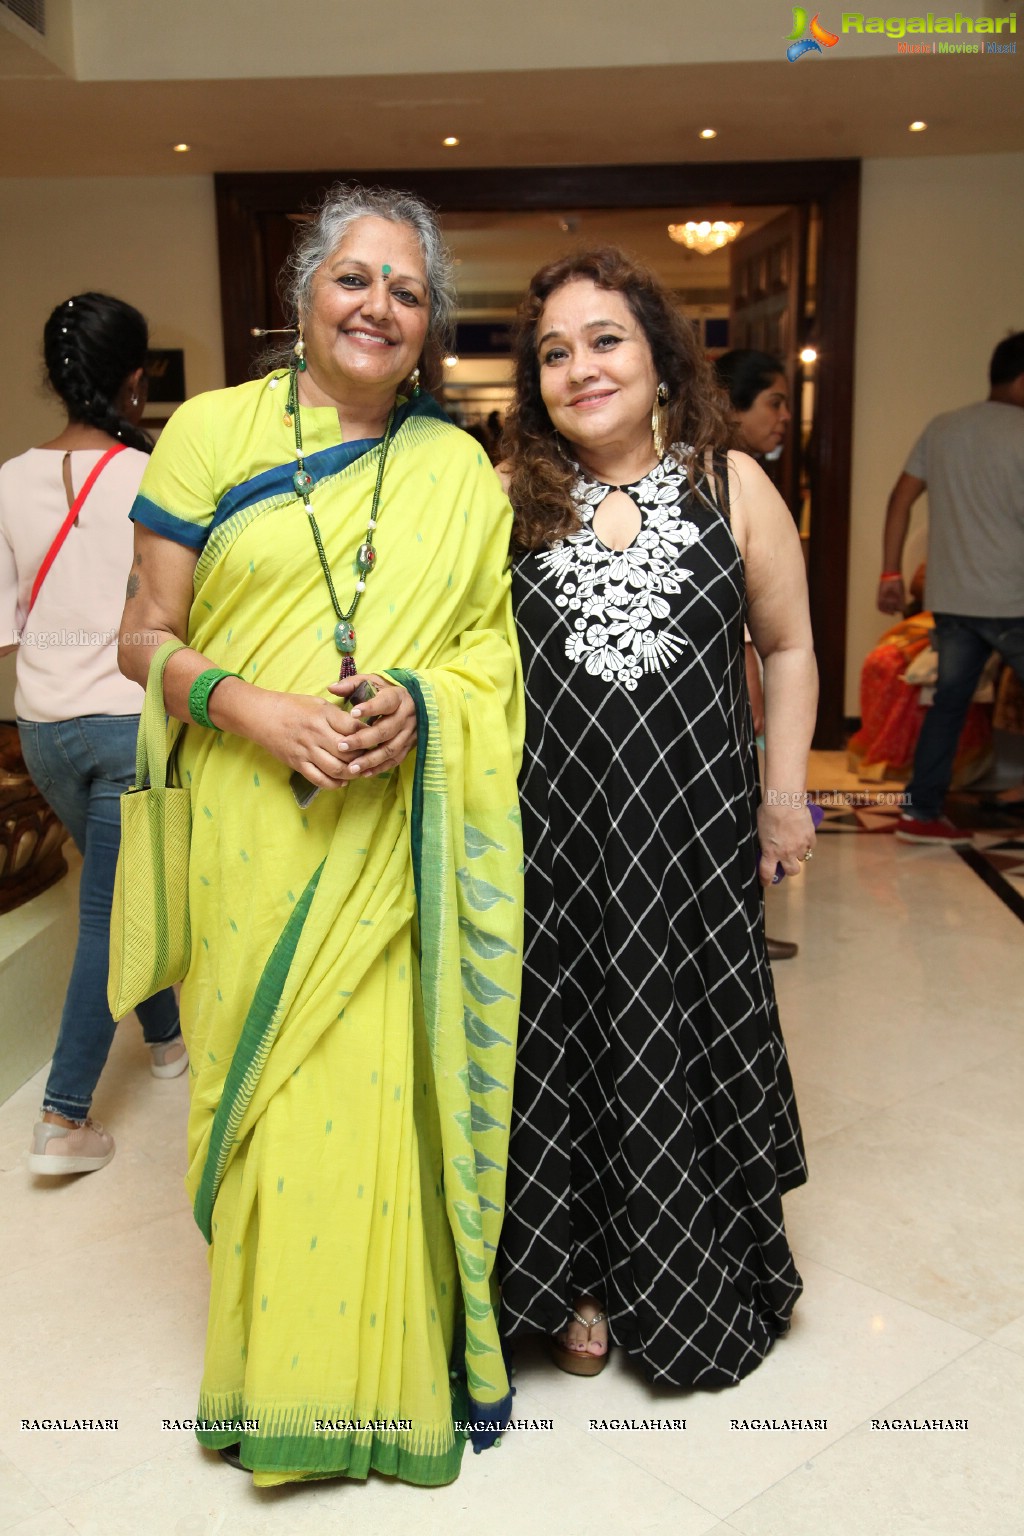 Absalut Style 2017 at Taj Krishna, Hyderabad